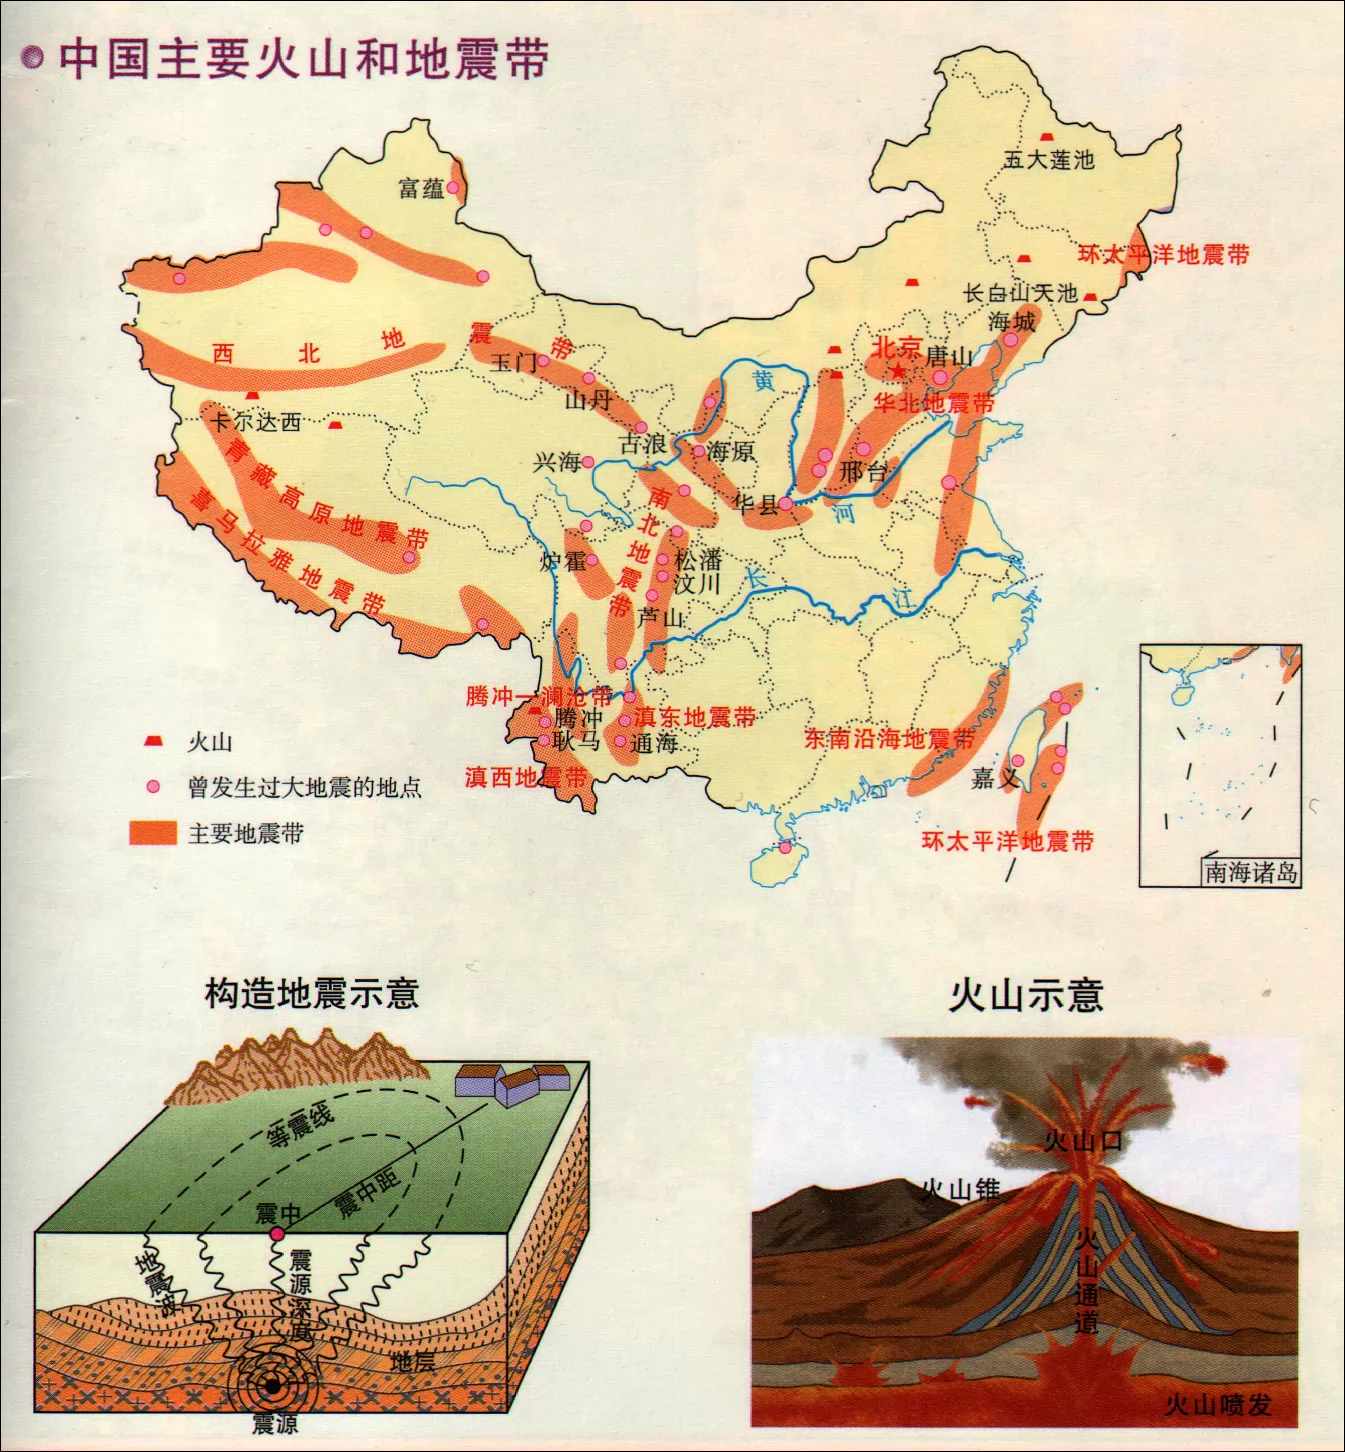 中国主要火山和地震分布图 - 中国地图全图 - 地